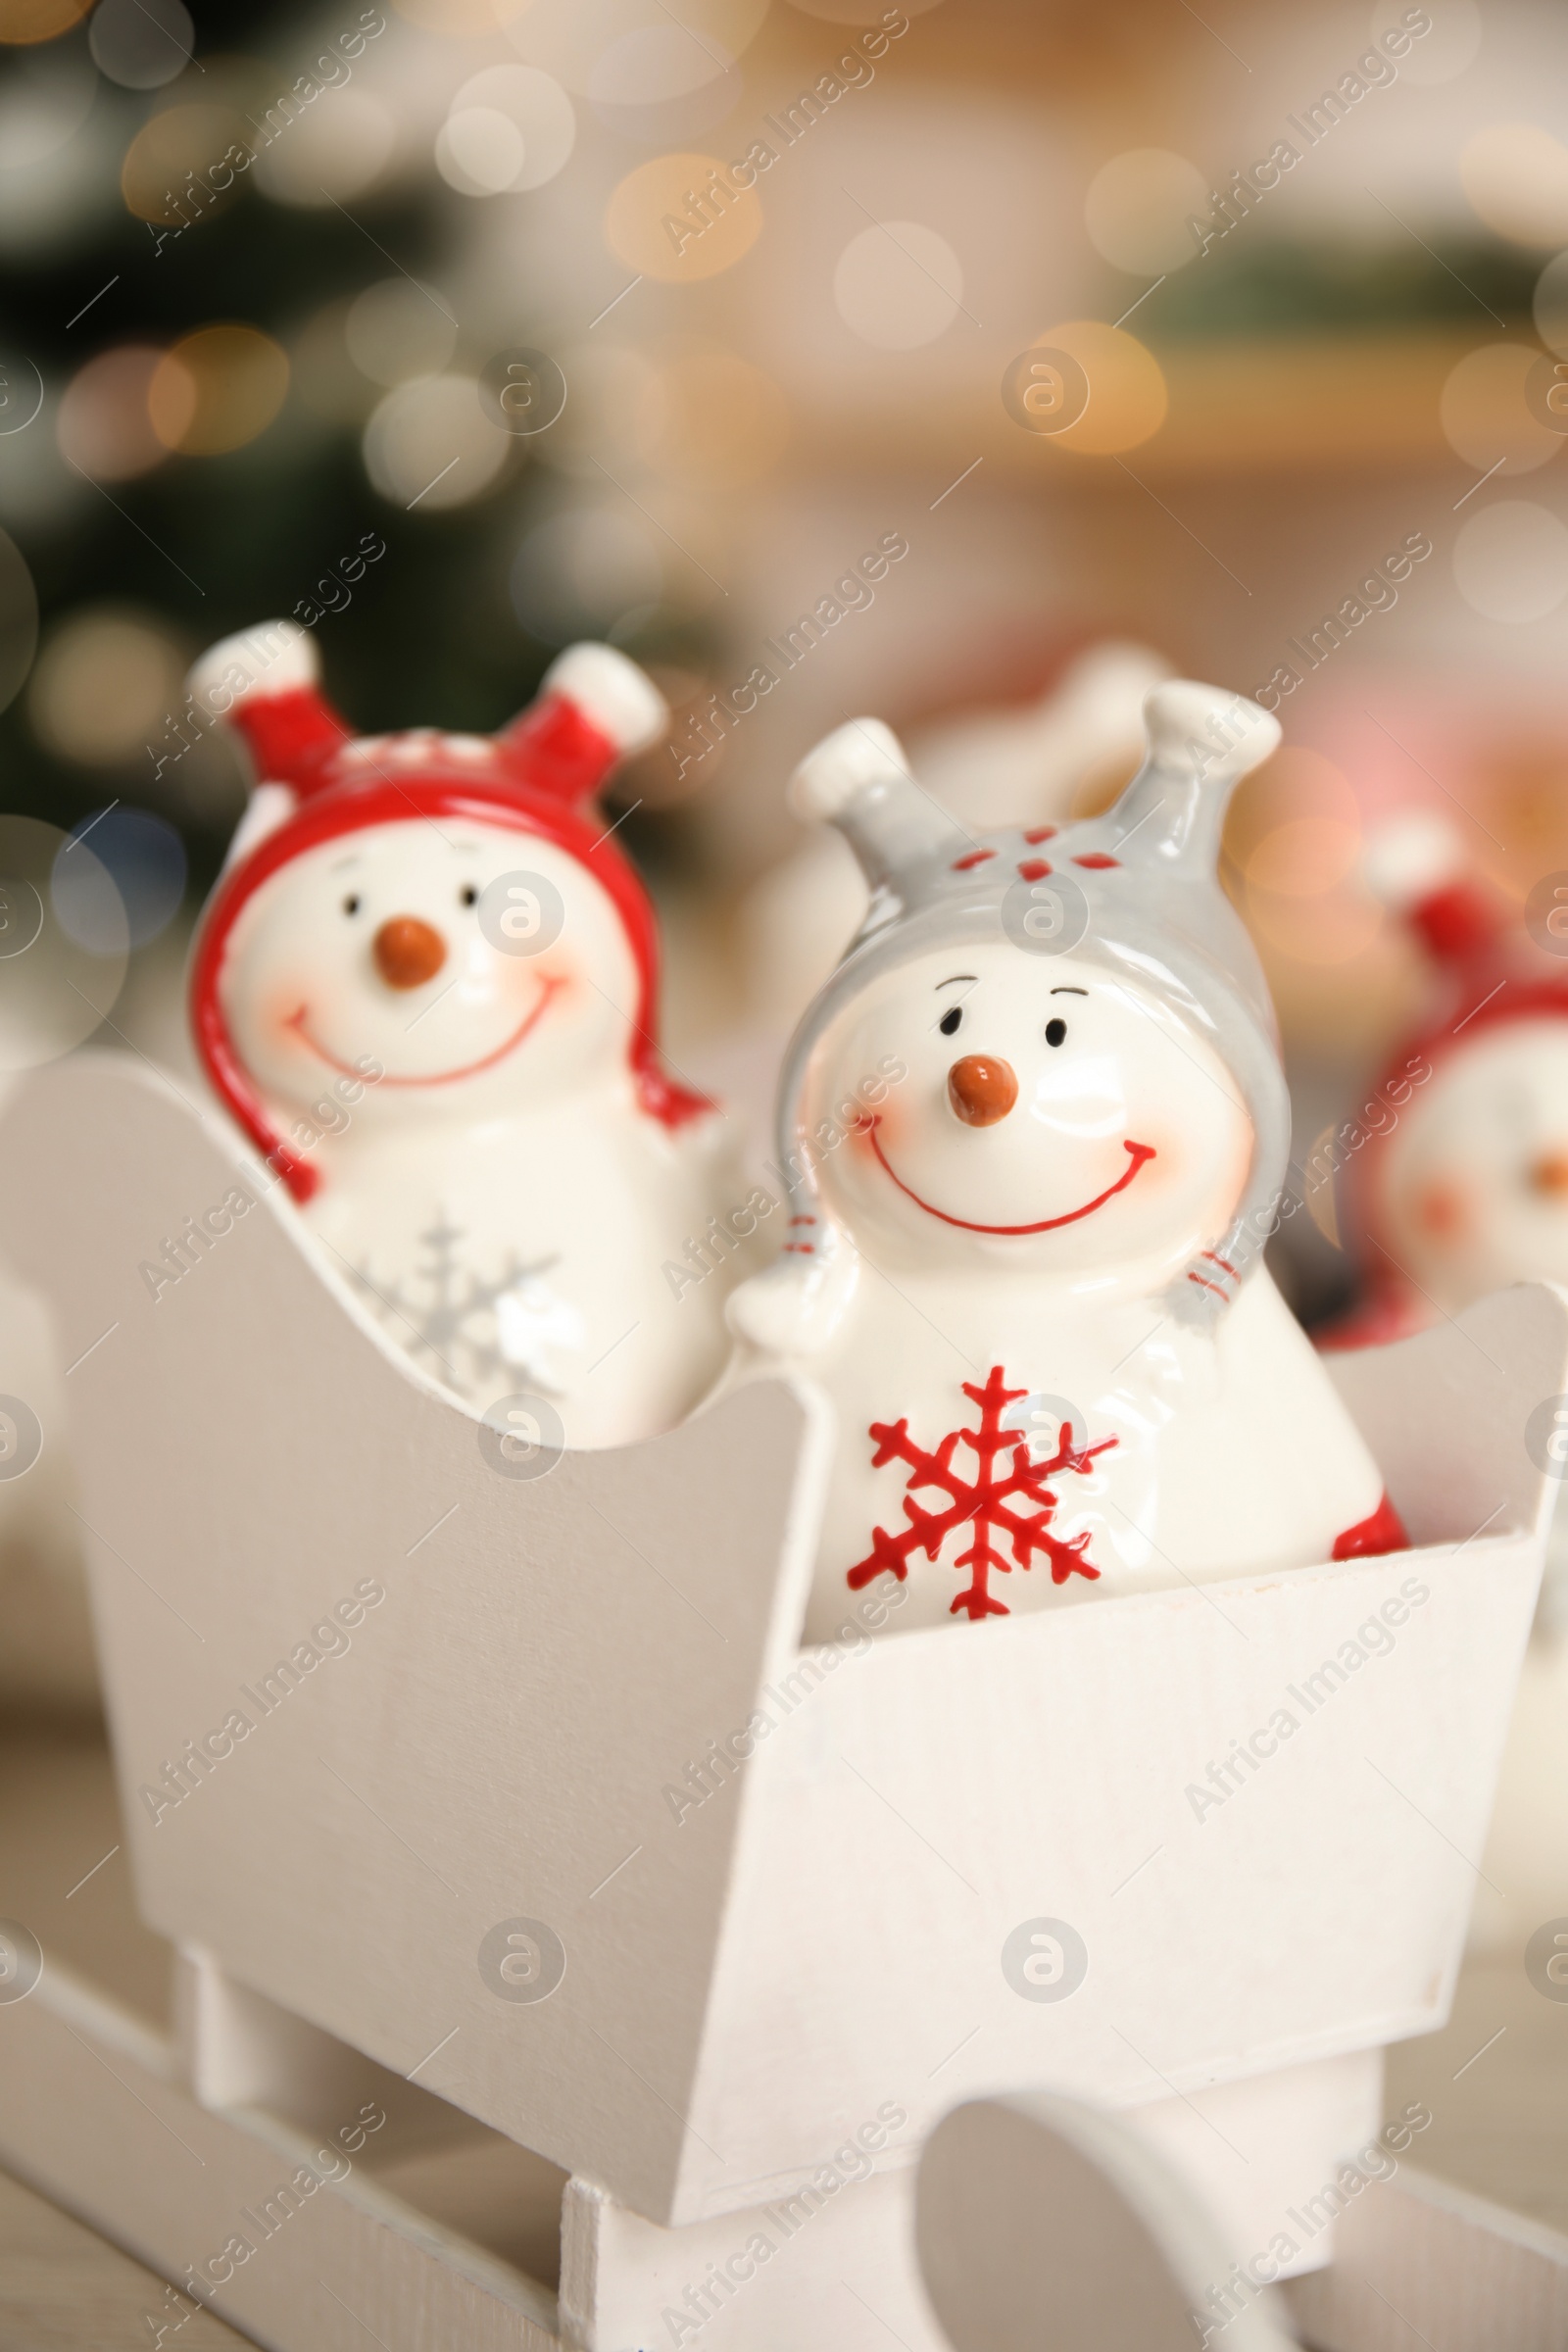 Photo of Cute decorative snowmen against blurred background, closeup